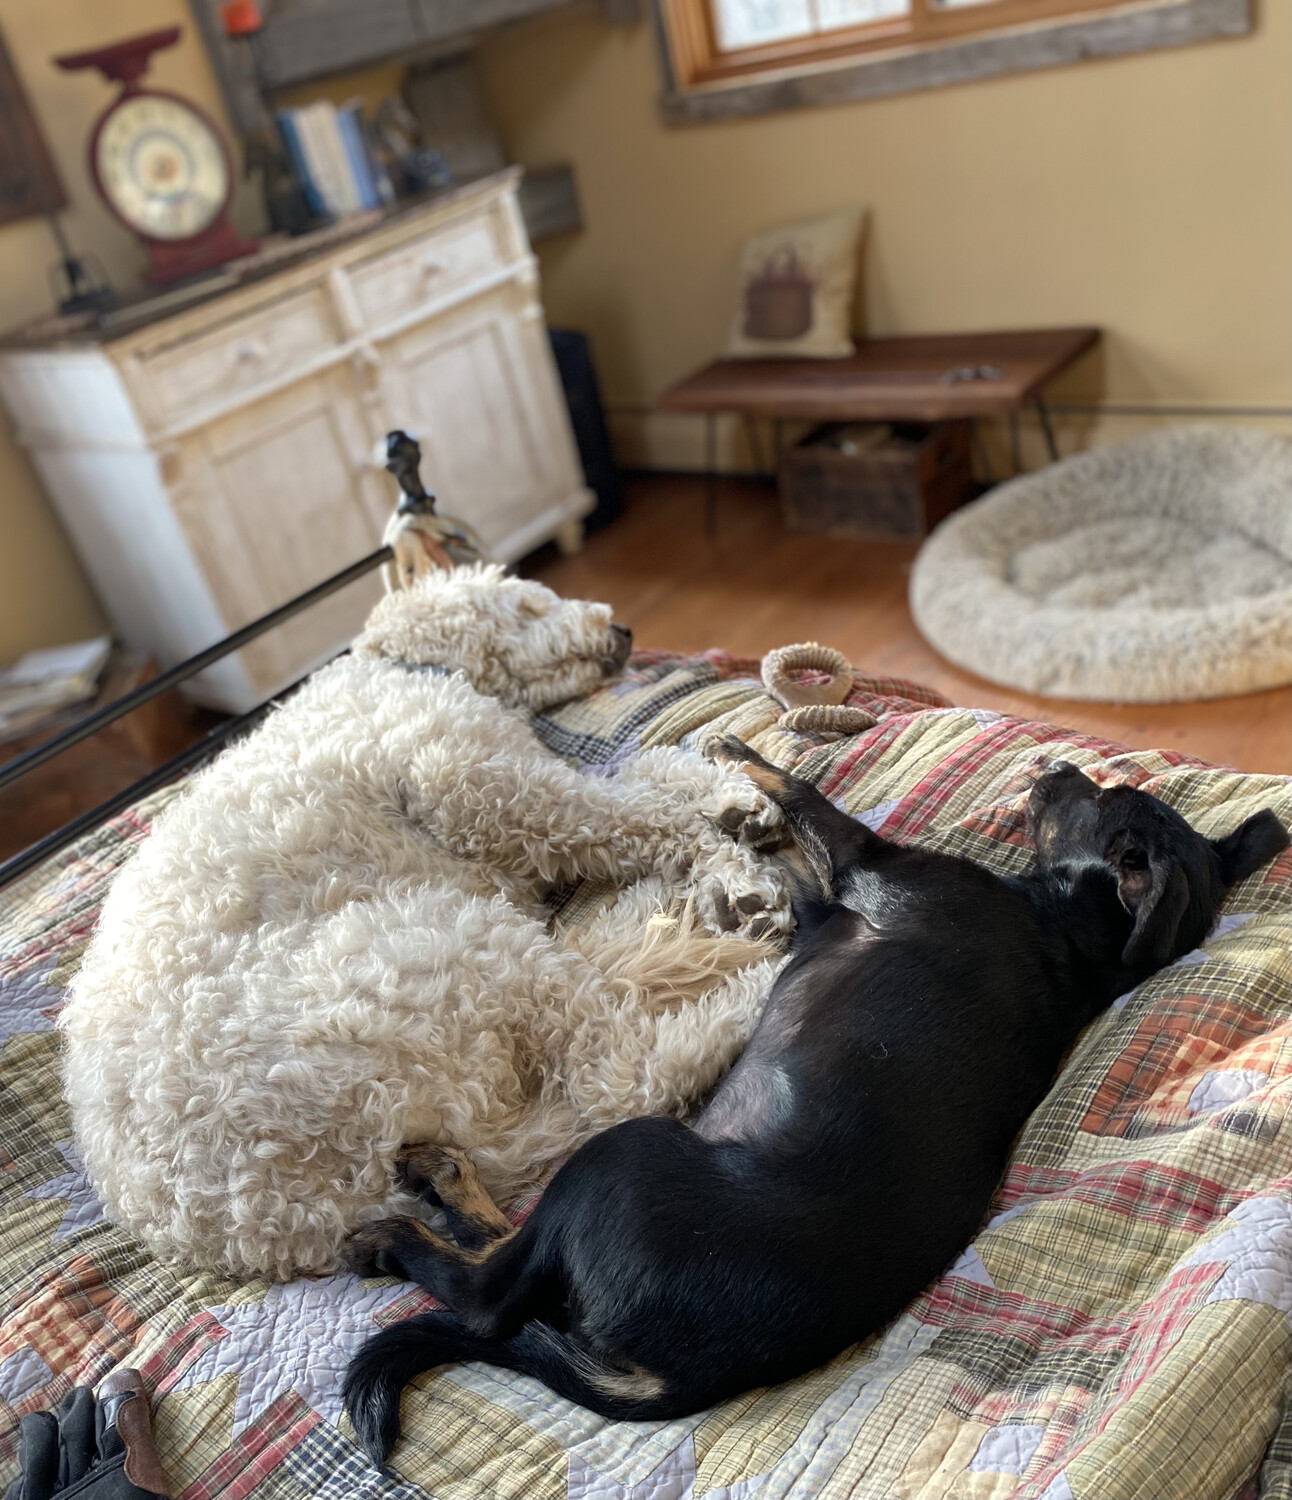 2 Katz dogs lie together on a rug